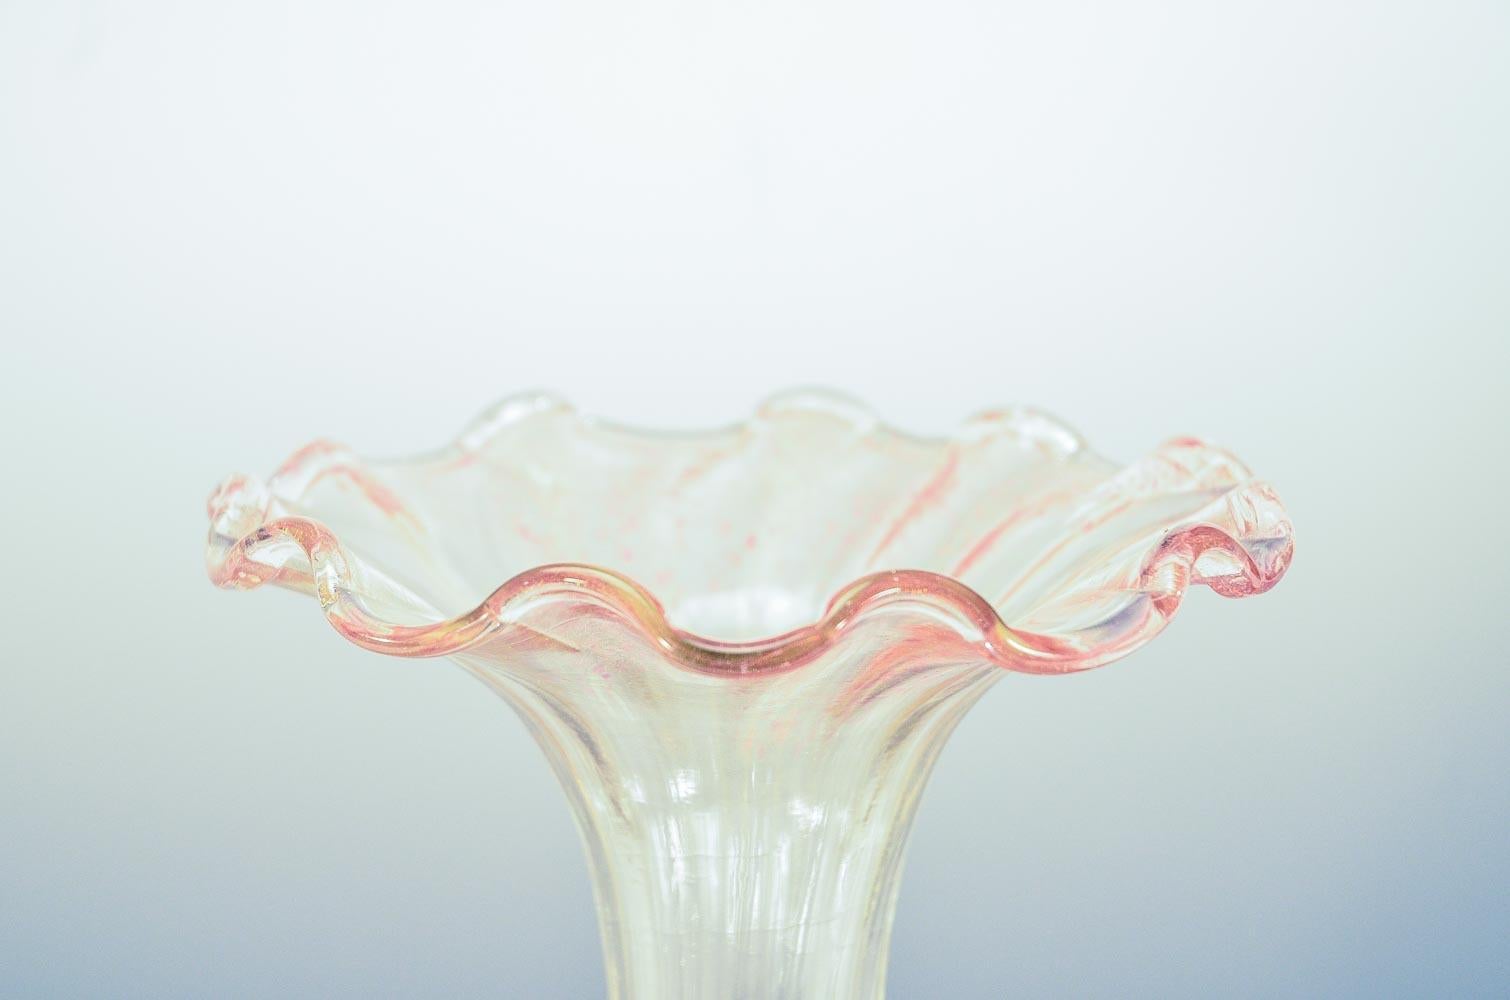 Diese erstaunliche mundgeblasene venezianische Vase von Salviati, steht 20 